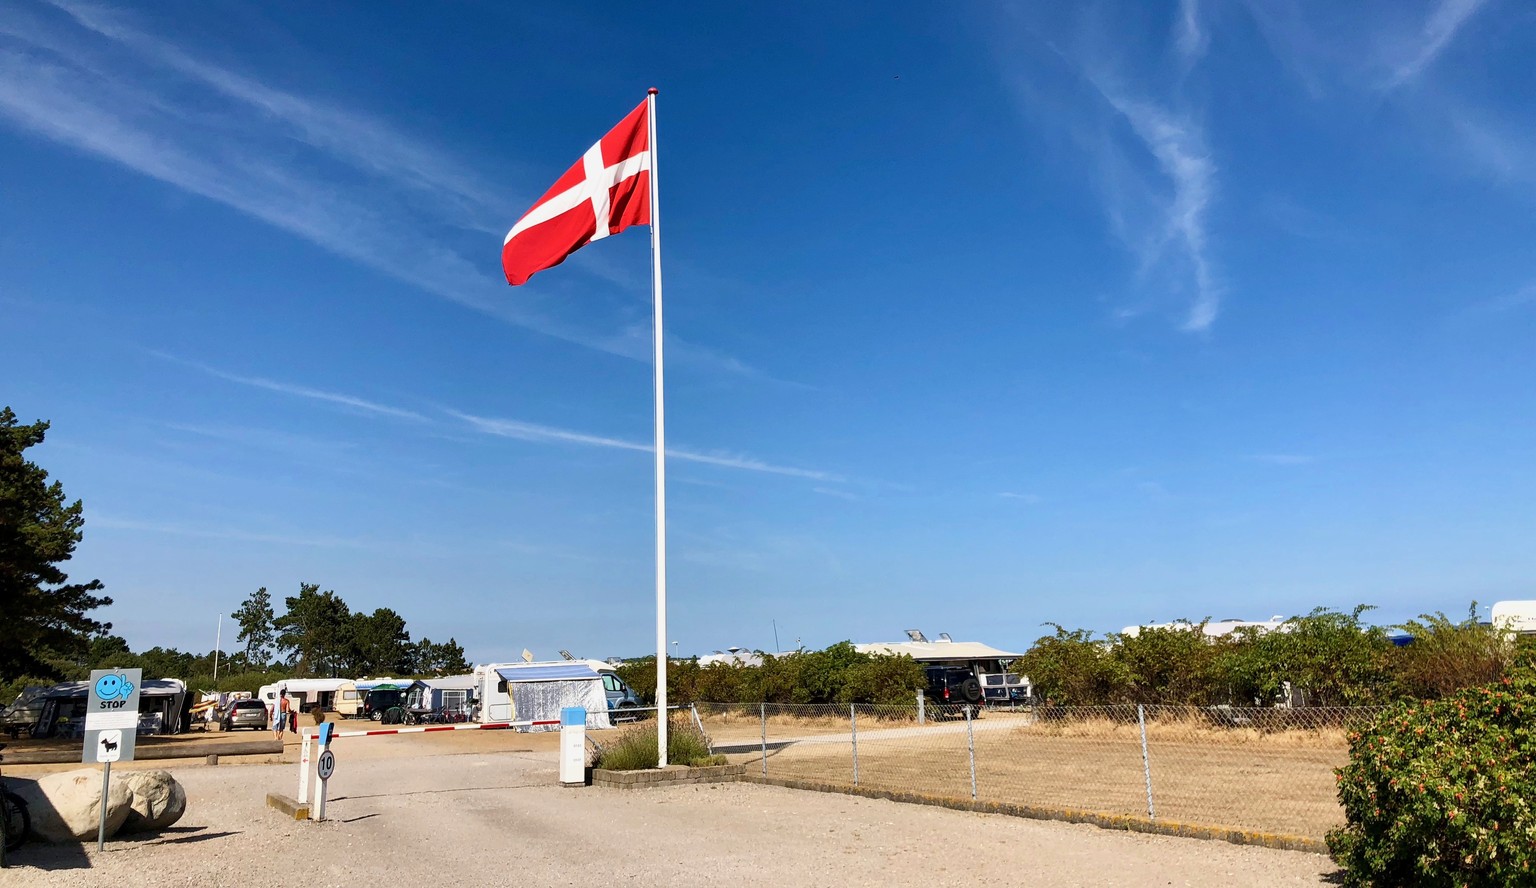 An ein australisches Straflager erinnernder Campingplatz am Dråby Strand.